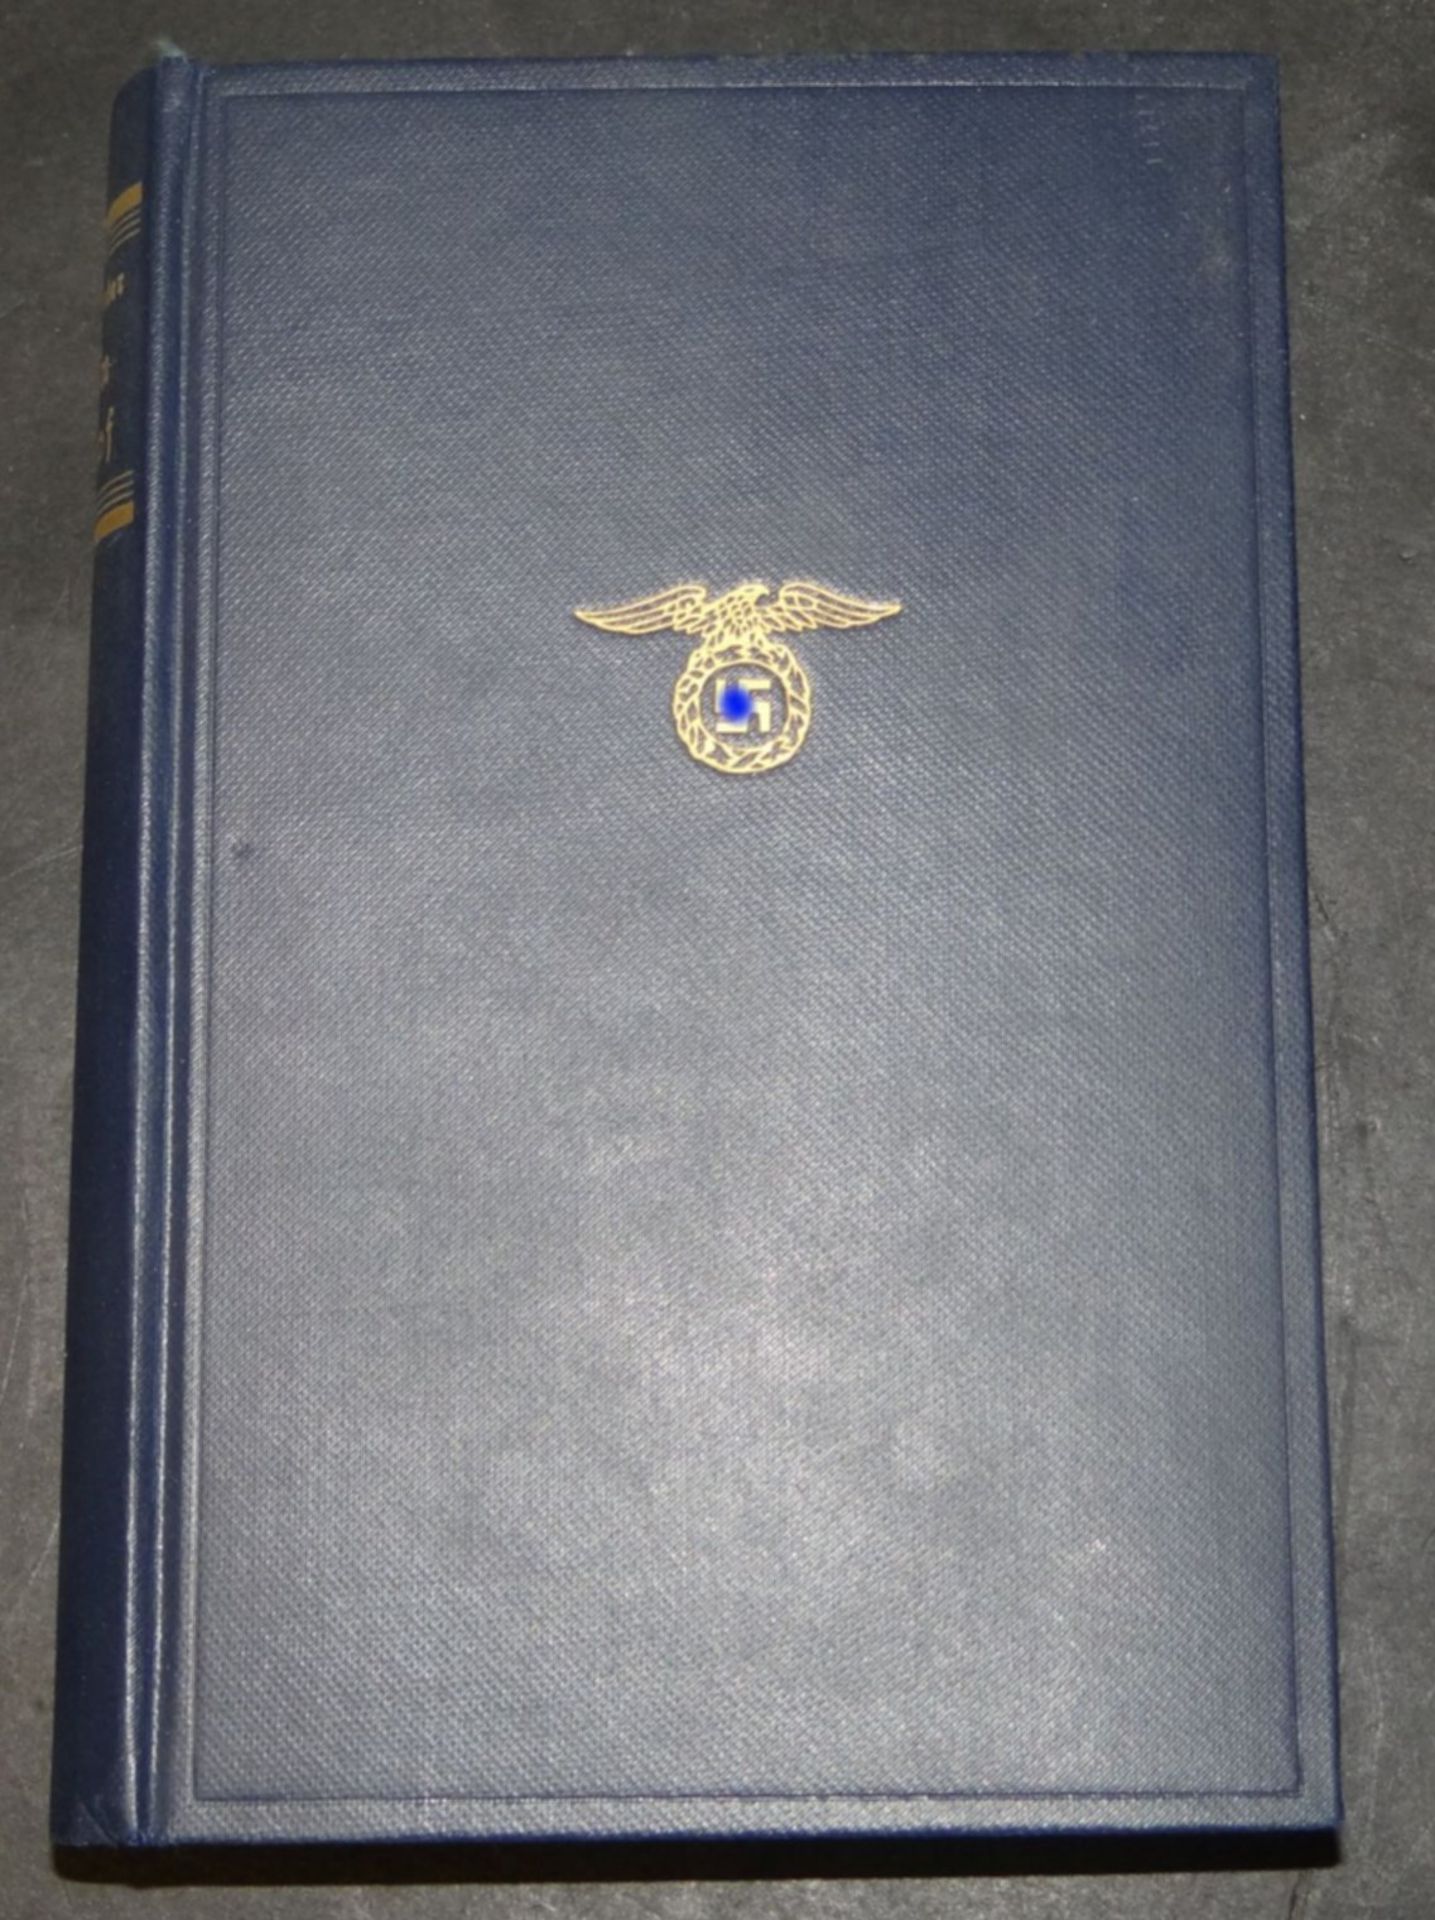 Ad. Hitler "Mein Kampf" blaue Ausgabe 1941, gut erhalten